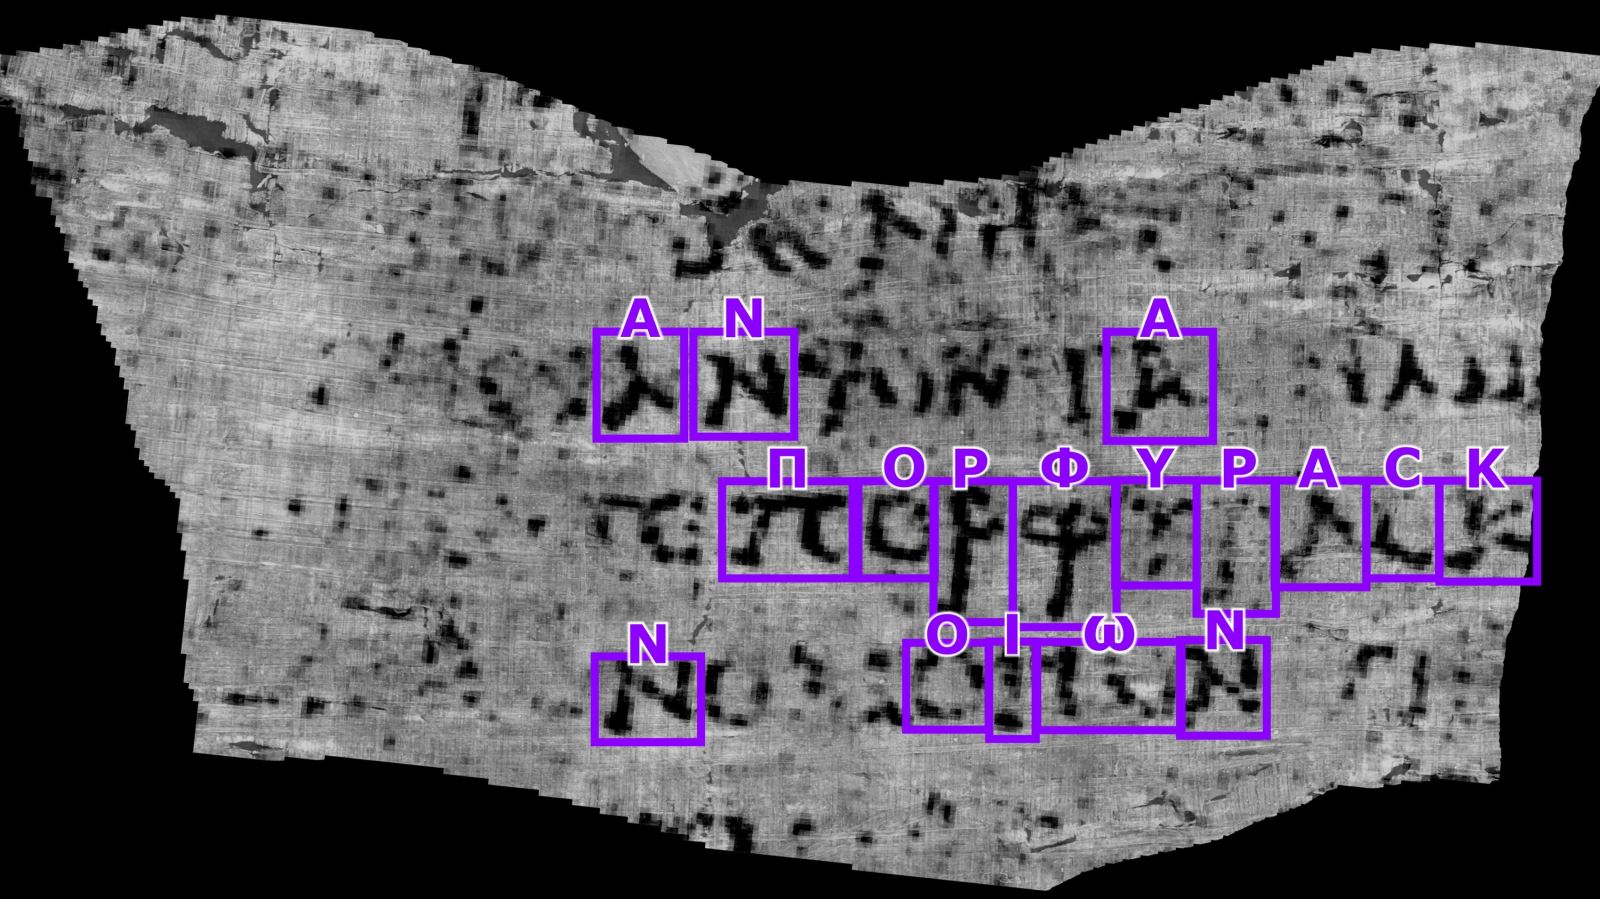 AI giúp giải mã cuộn giấy bị núi lửa chôn vùi vào năm 79 sau Công nguyên- Ảnh 3.